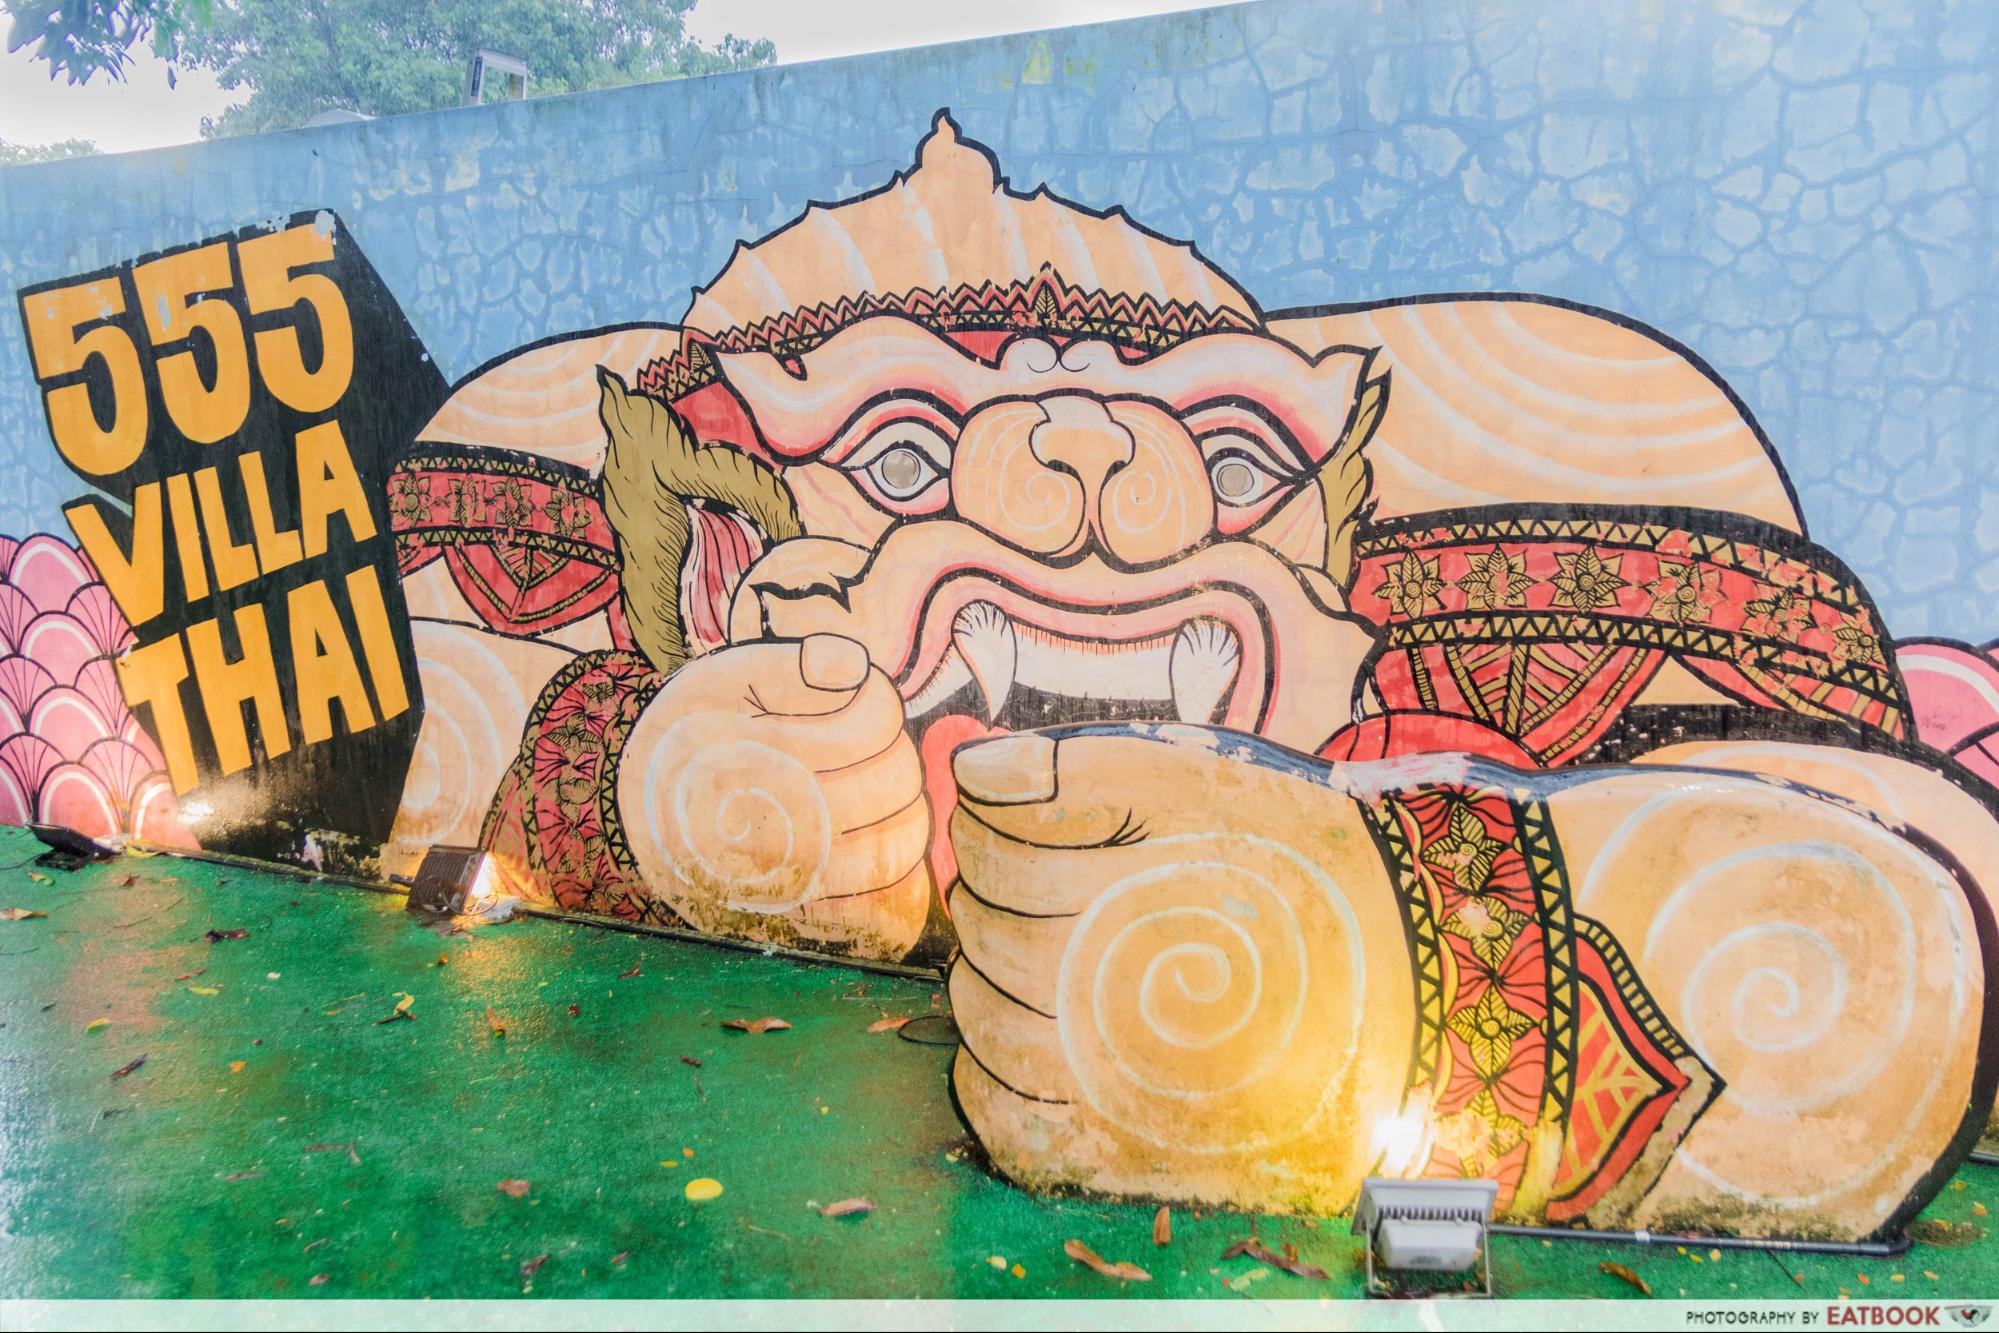 555 Villa Thai - mural